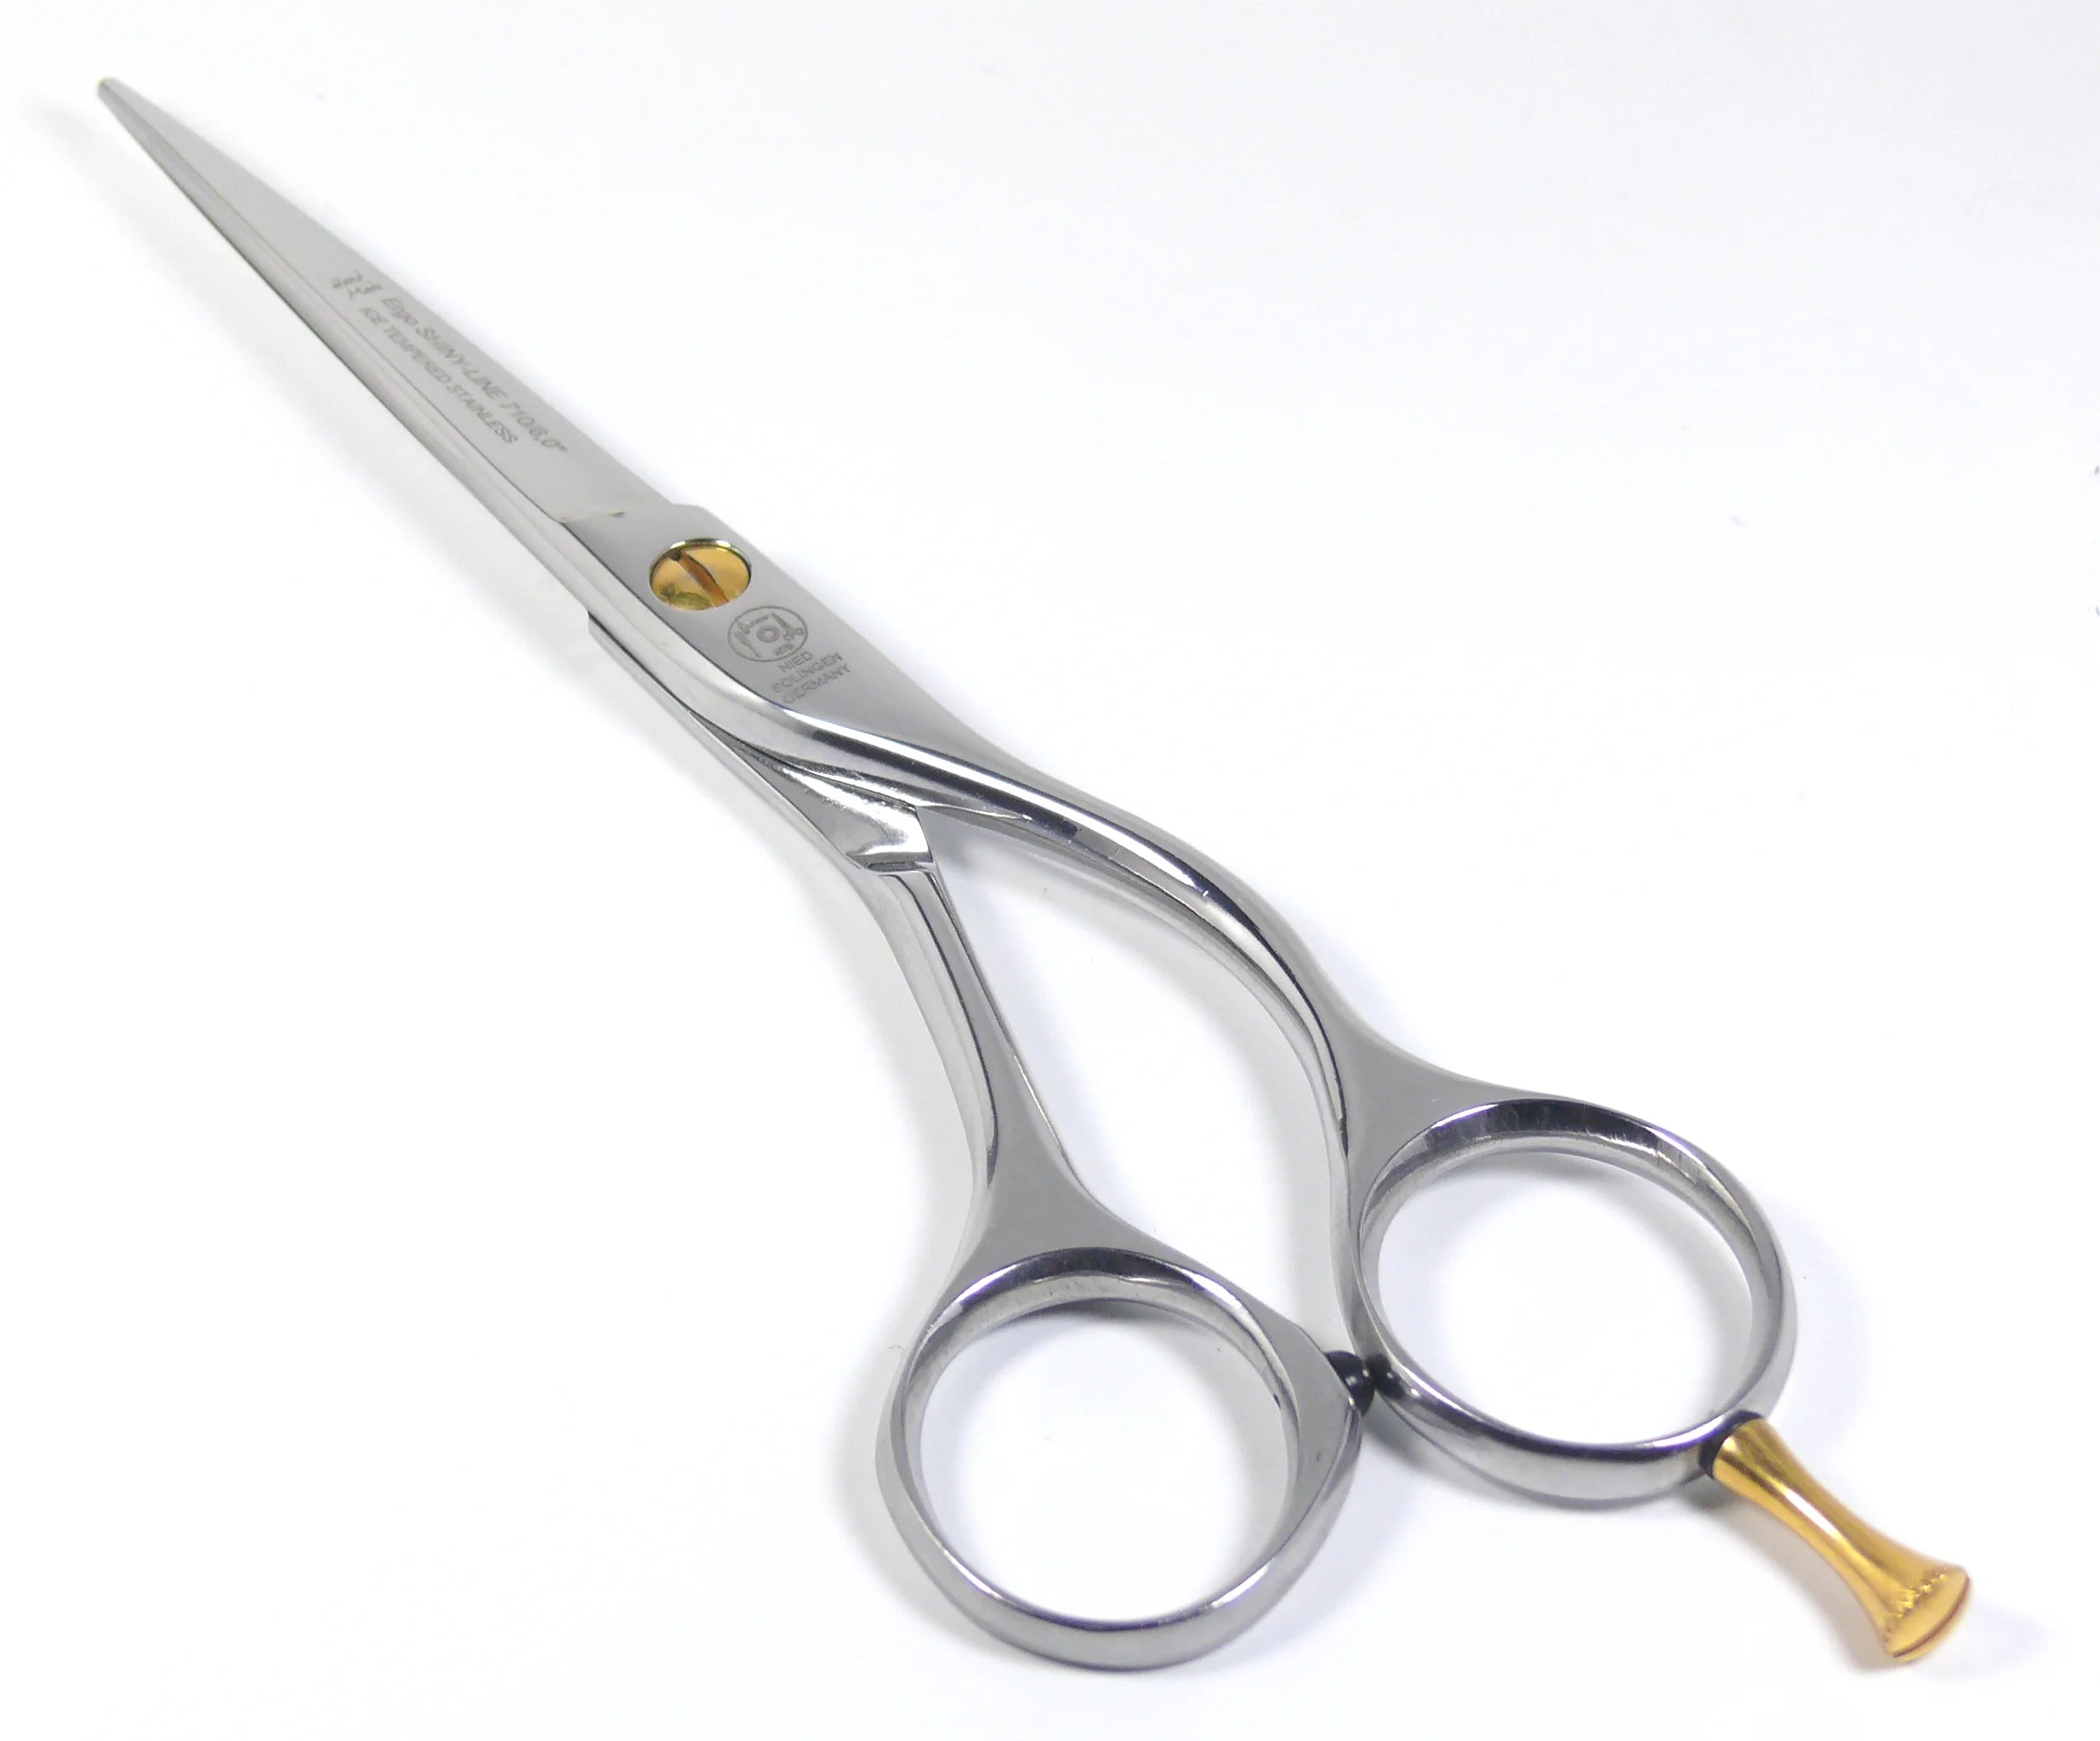 Ciseaux de coiffeur Ergo Shiny Line polis, longueur totale 15 cm